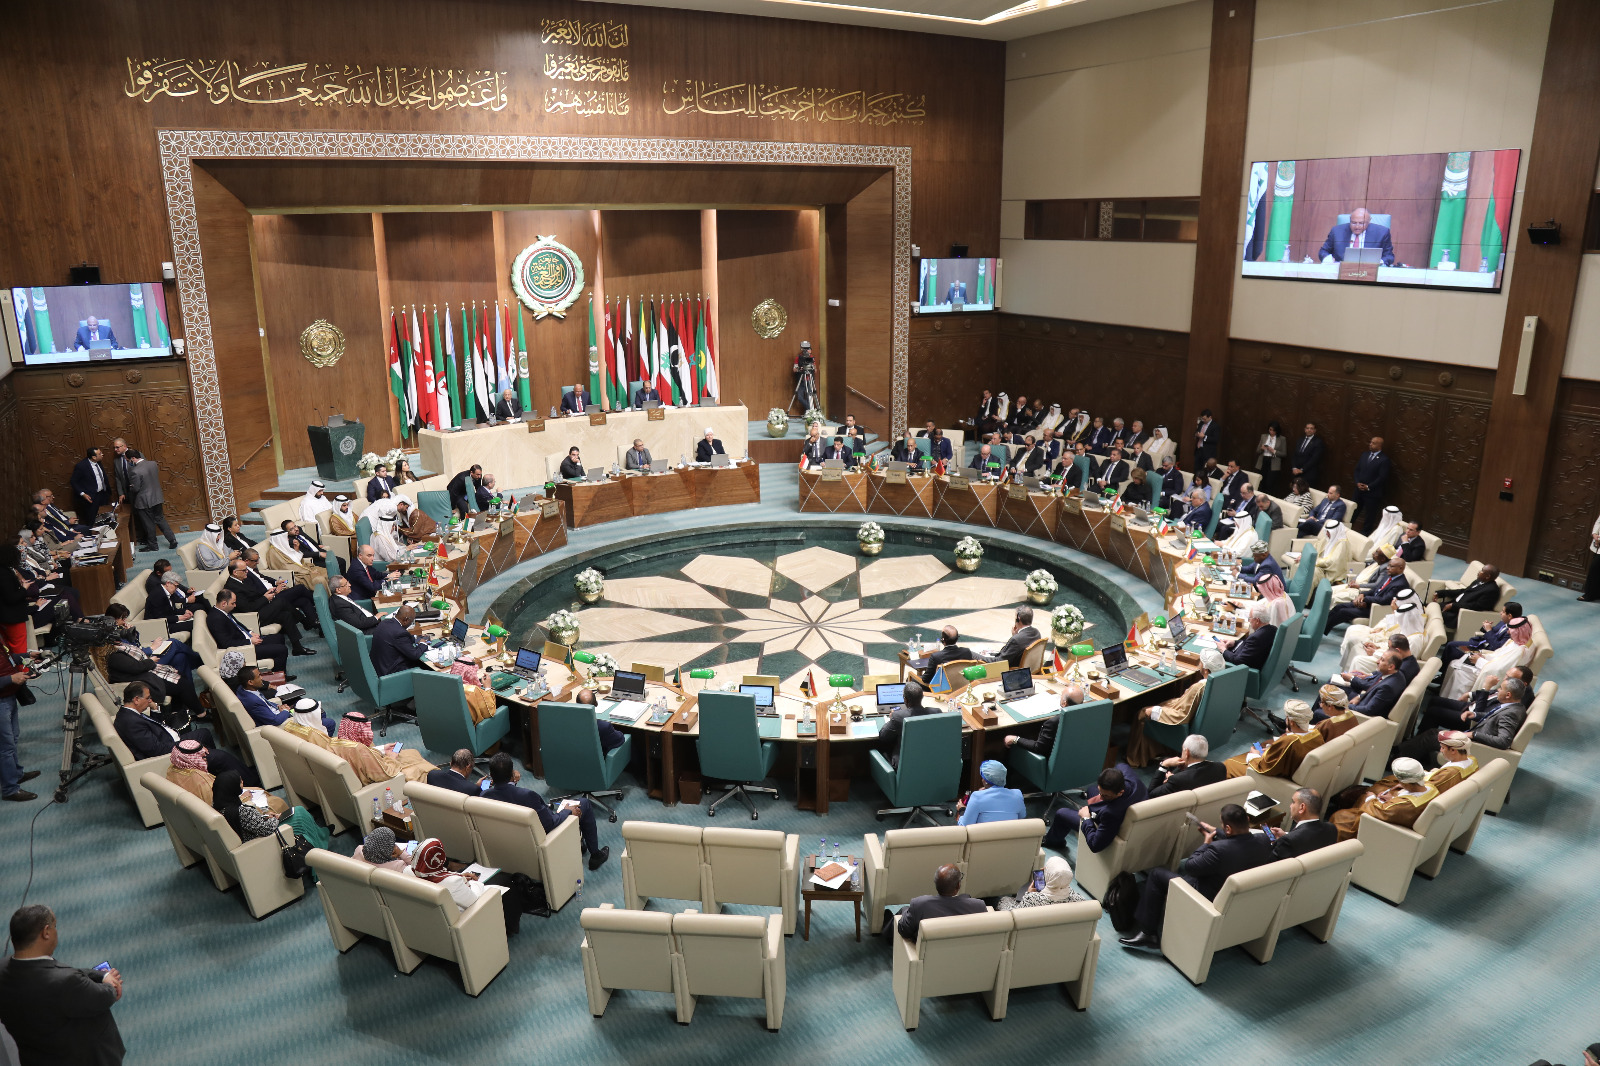 *مجلس الجامعة العربية يثمن جهود البرلمان العربي لدعم القضية الفلسطينية ويدعو البرلمانات العربية إلى تحركات مماثلة*